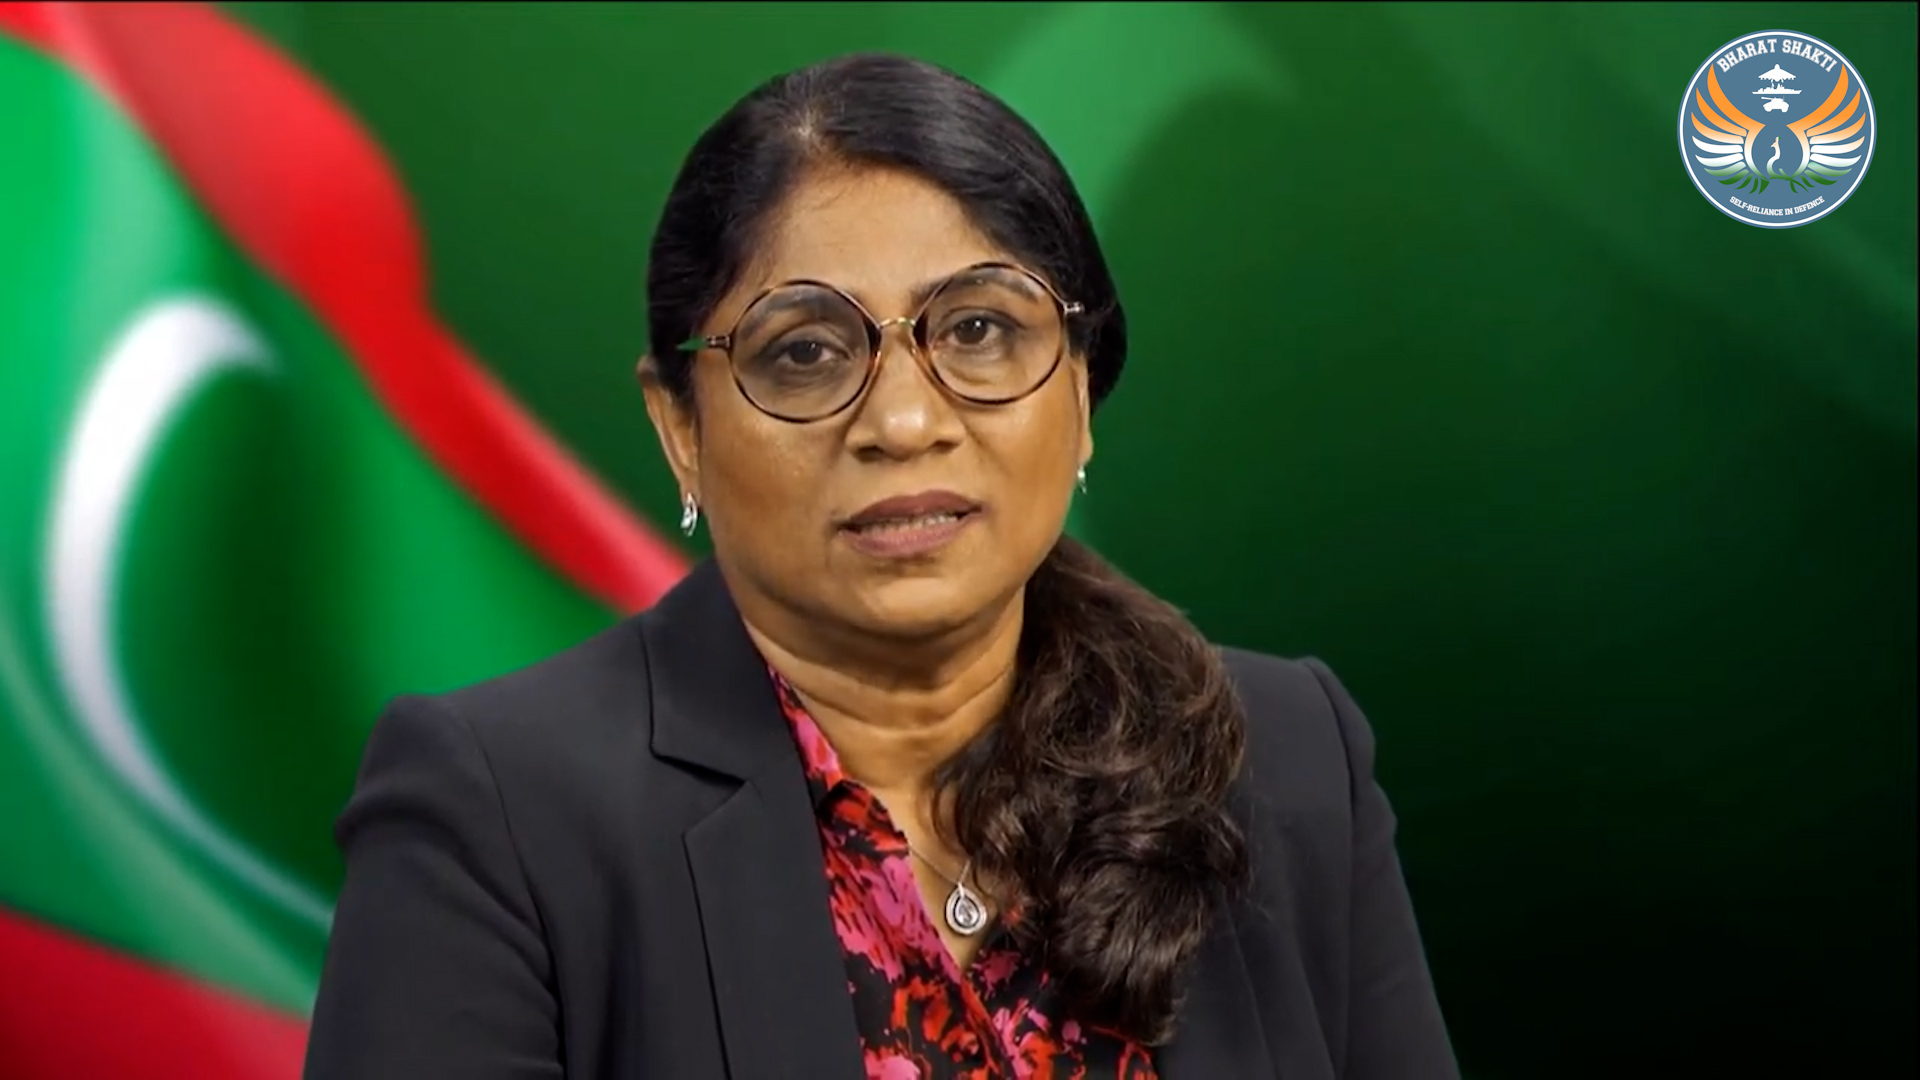 जागतिक स्पर्धेसाठी हिंद महासागर क्षेत्र नवे गंतव्यस्थान बनेल : मालदीवच्या संरक्षणमंत्र्यांचे प्रतिपादन